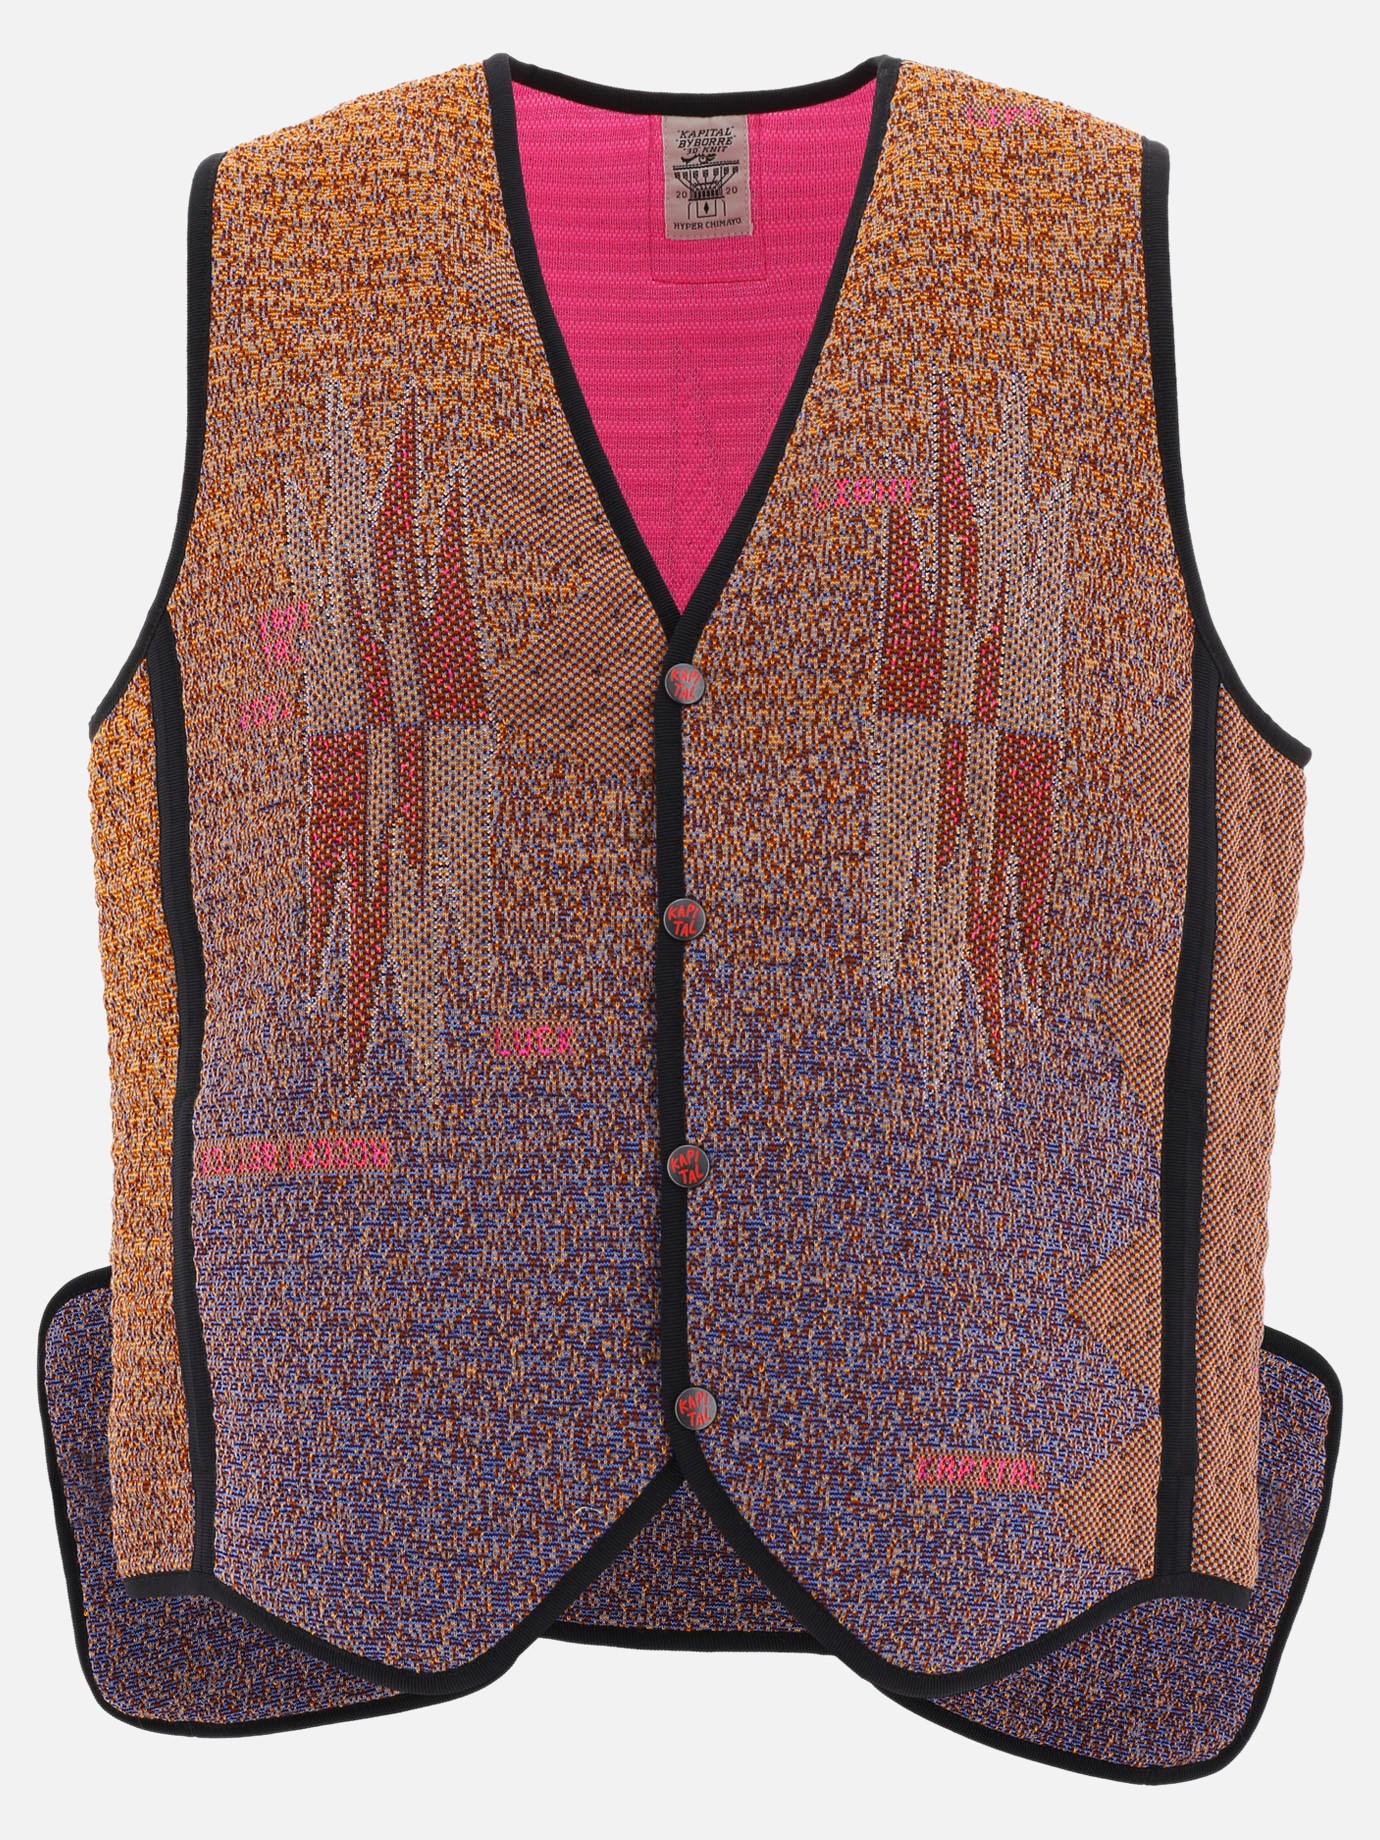  3D Hyper Chimayo  vest by Kapital